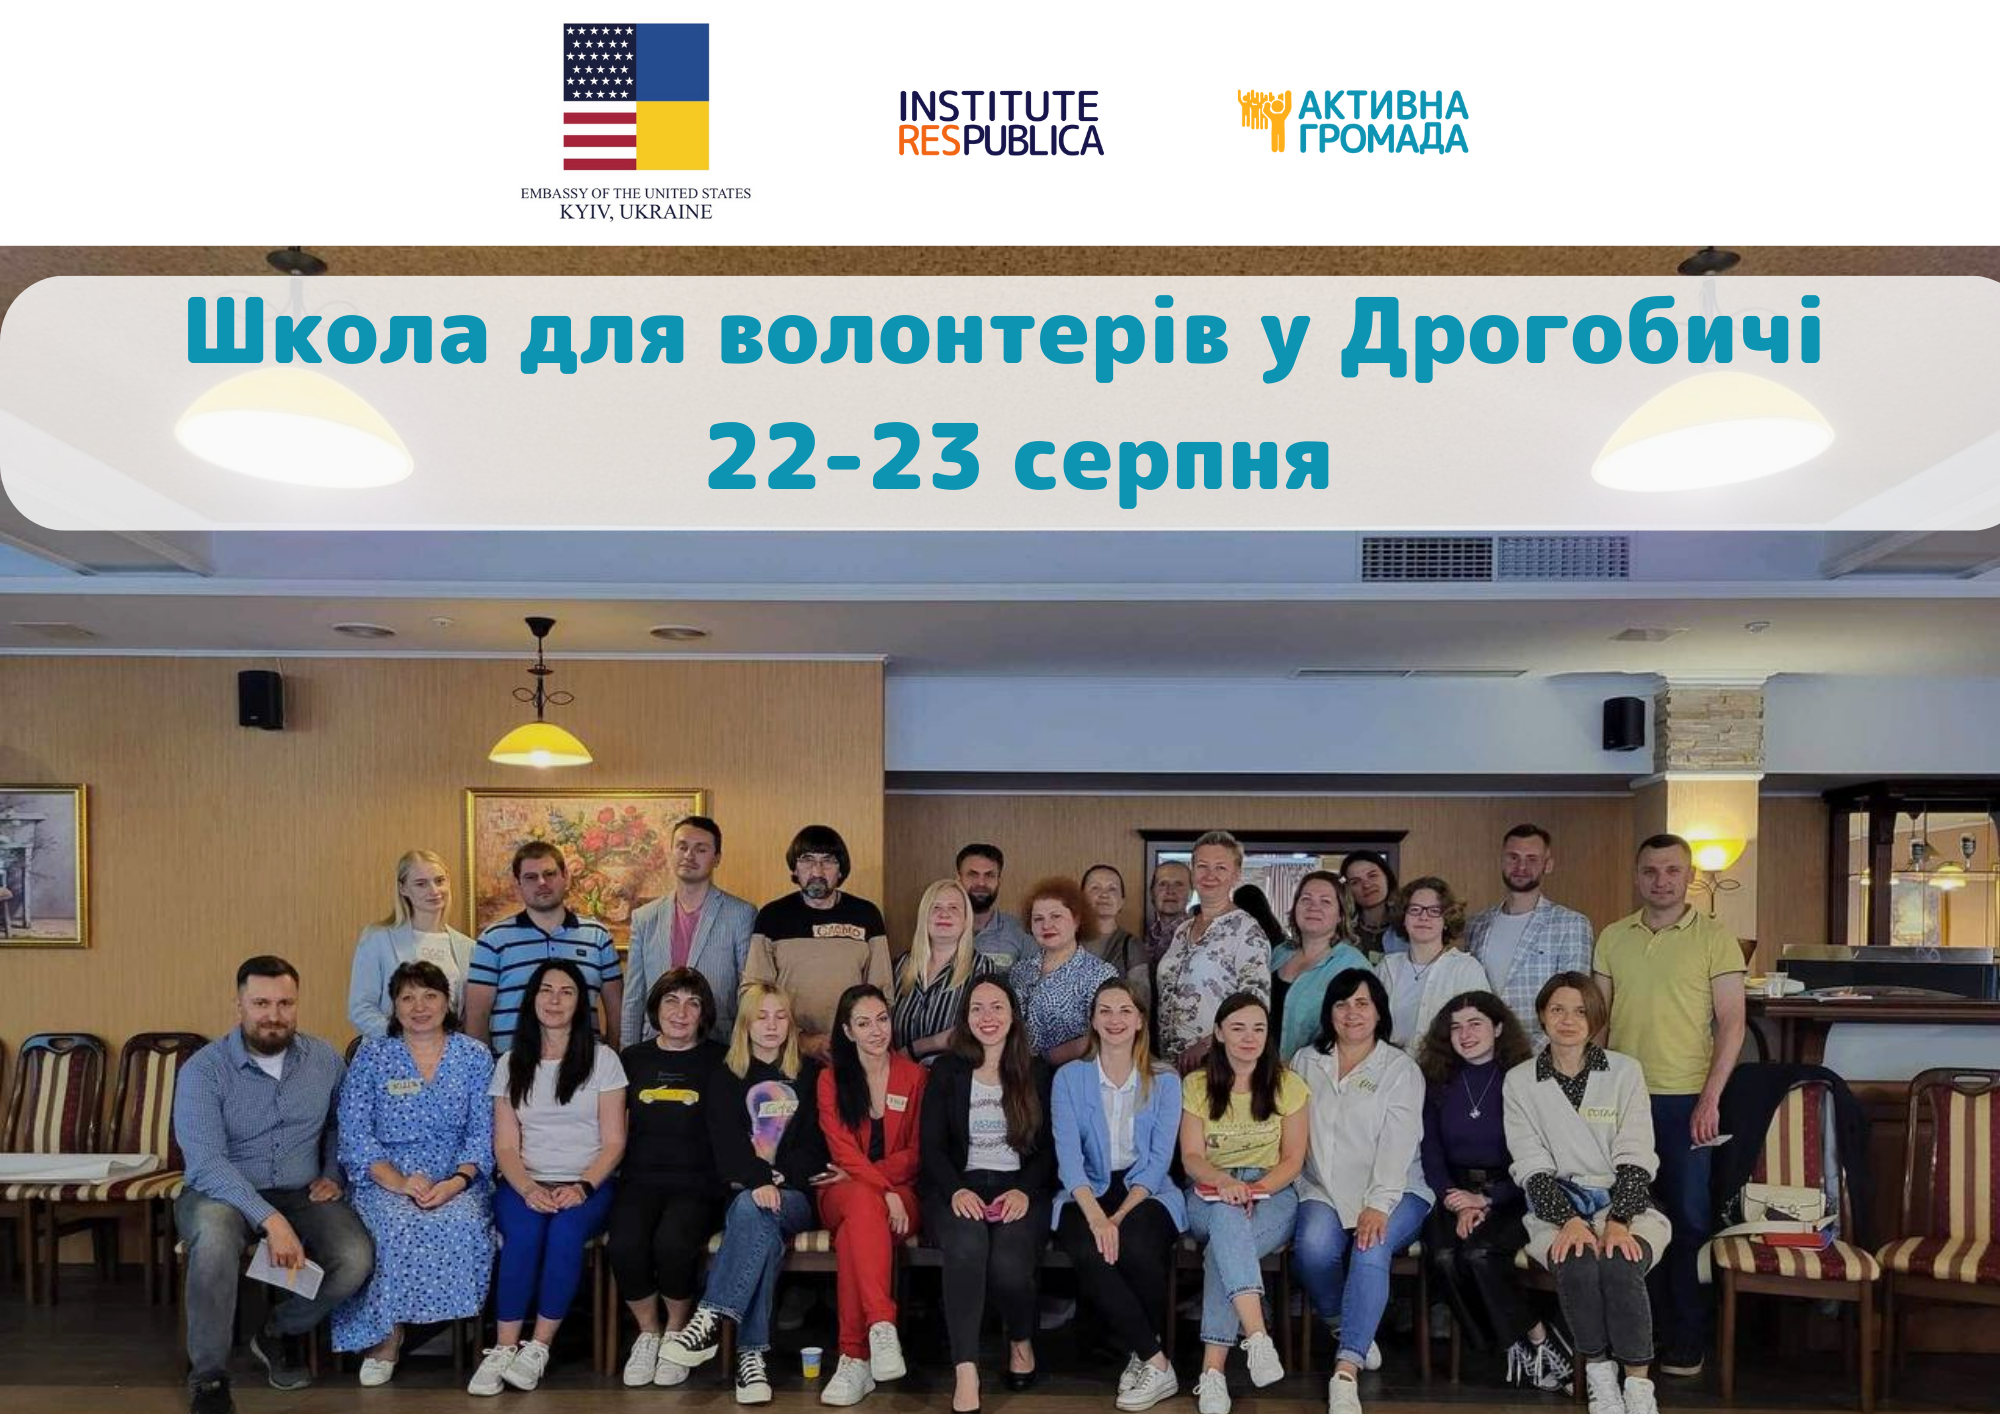 У Дрогобичі проведуть школу для волонтерів: «Активна громада» запрошує на навчання представників громадськості